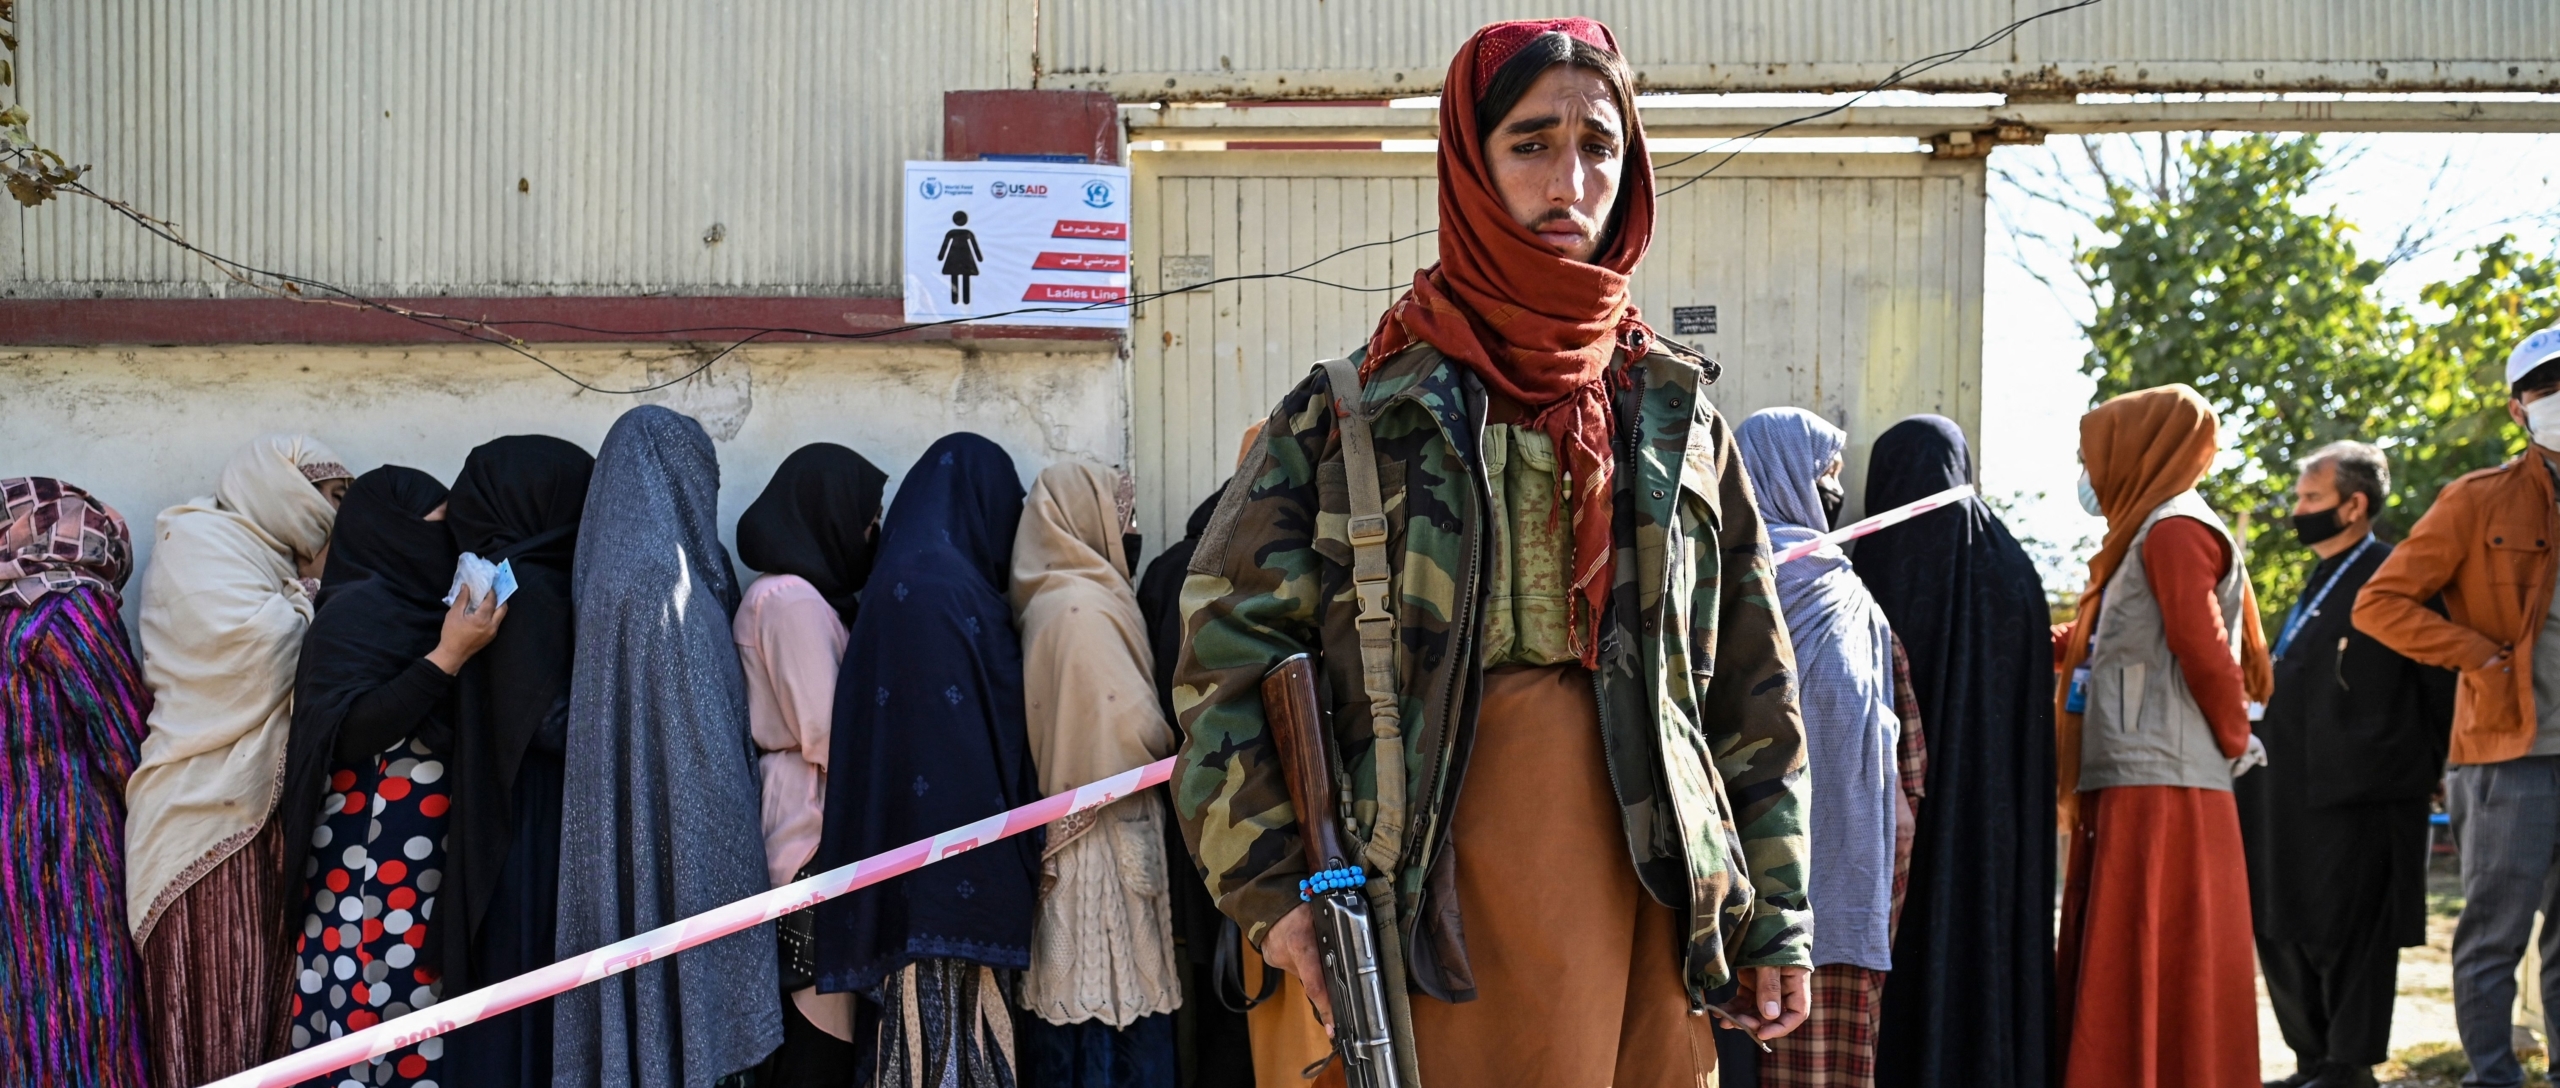 Afganistán Las sobrevivientes de violencia de género, abandonadas tras la toma del poder por los talibanes - nueva investigación imagen